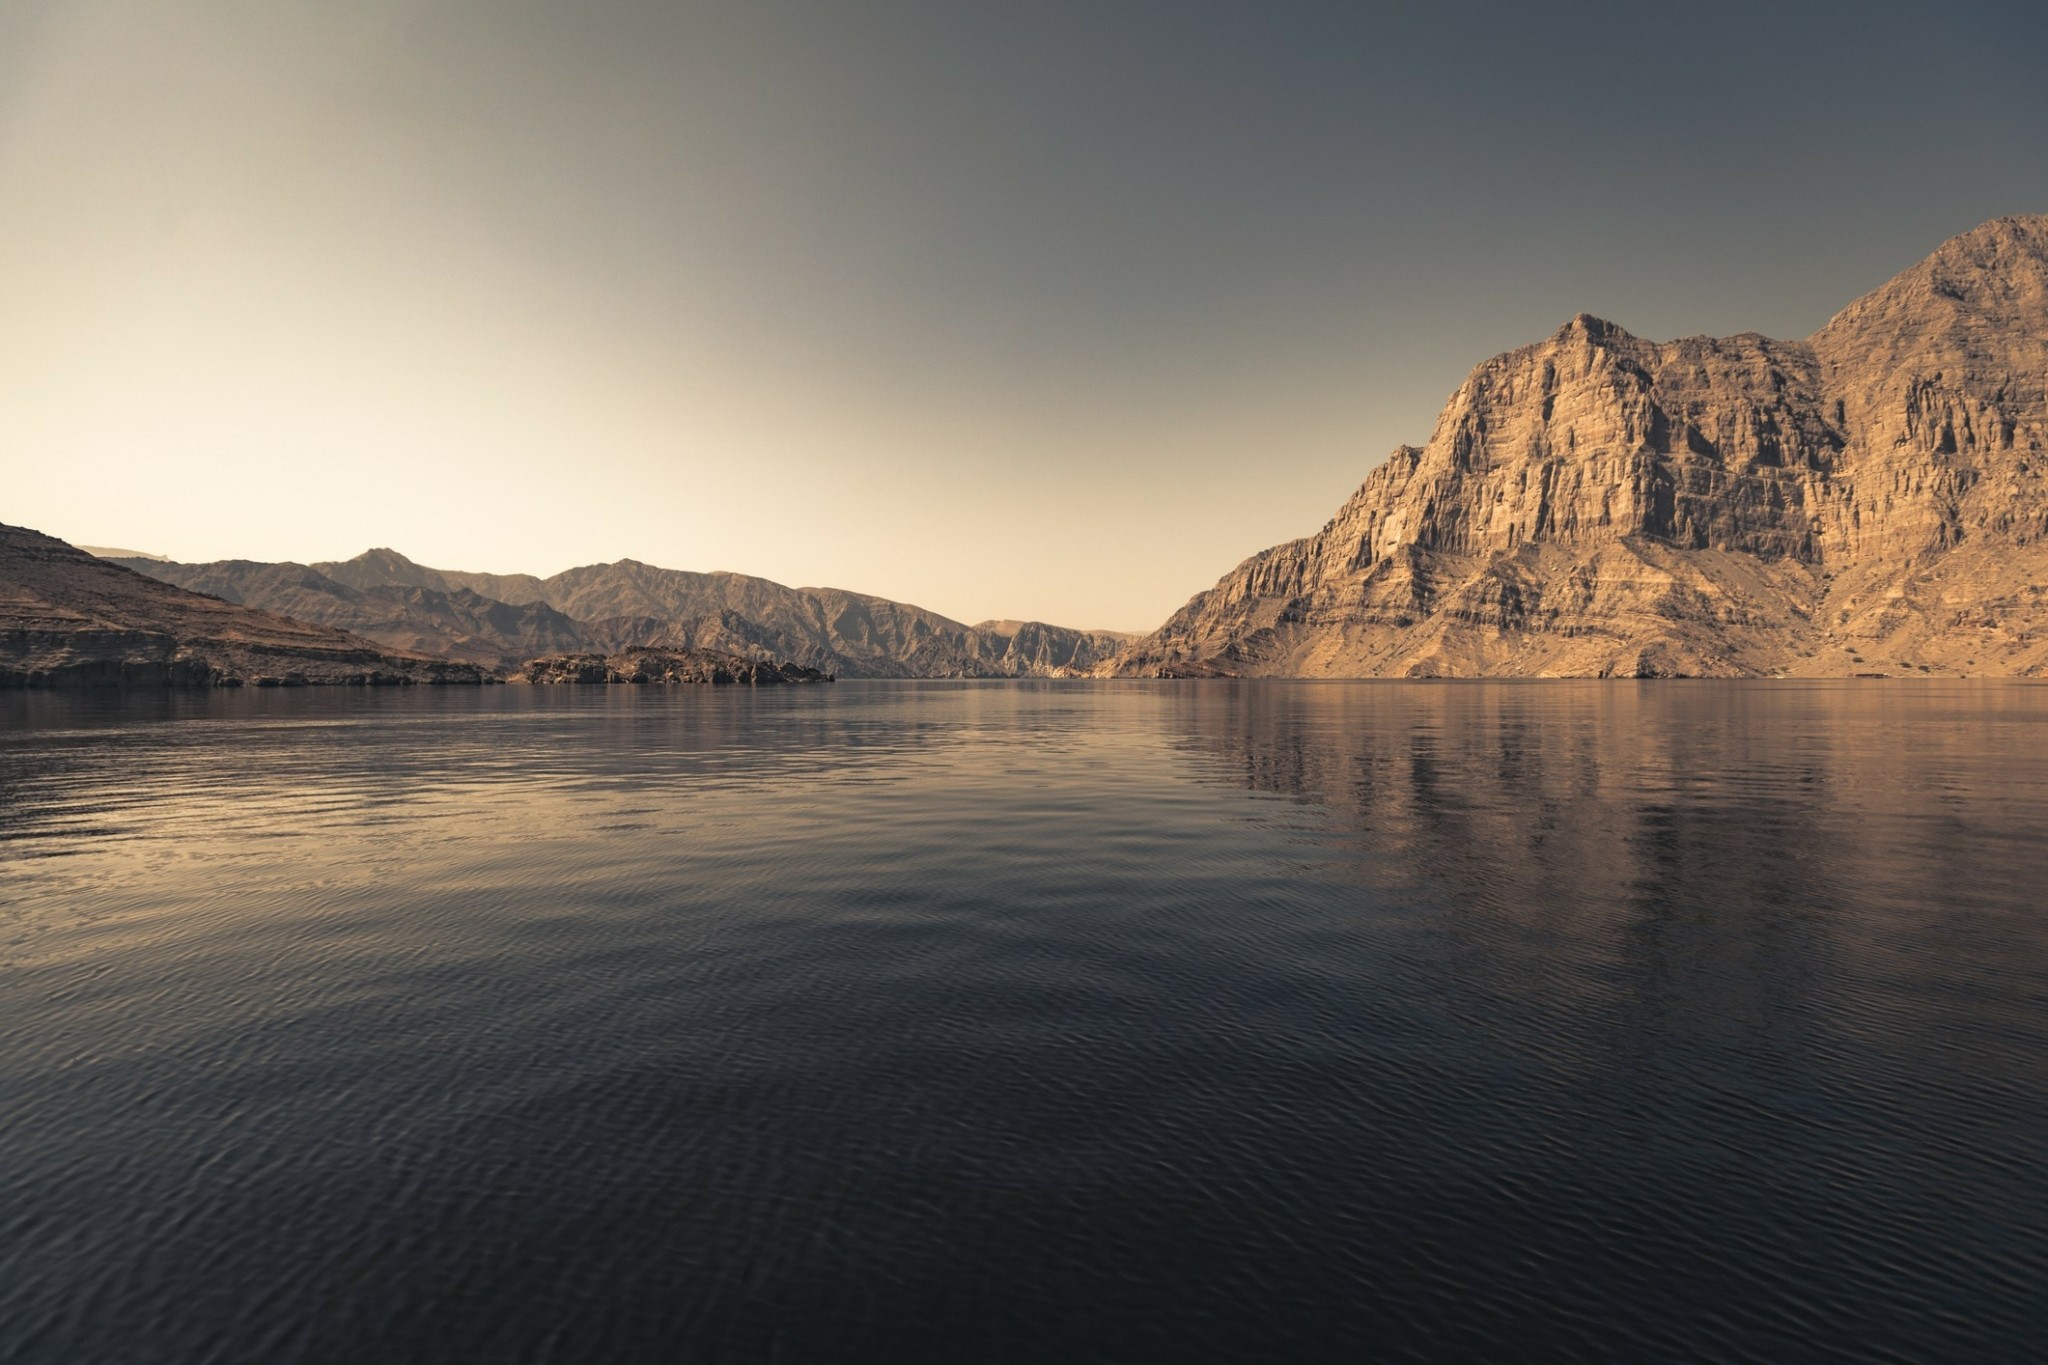 “Η Νορβηγία της Αραβίας” – Η εμπειρία στην άγρια ακτογραμμή μιας χερσονήσου στο Ομάν